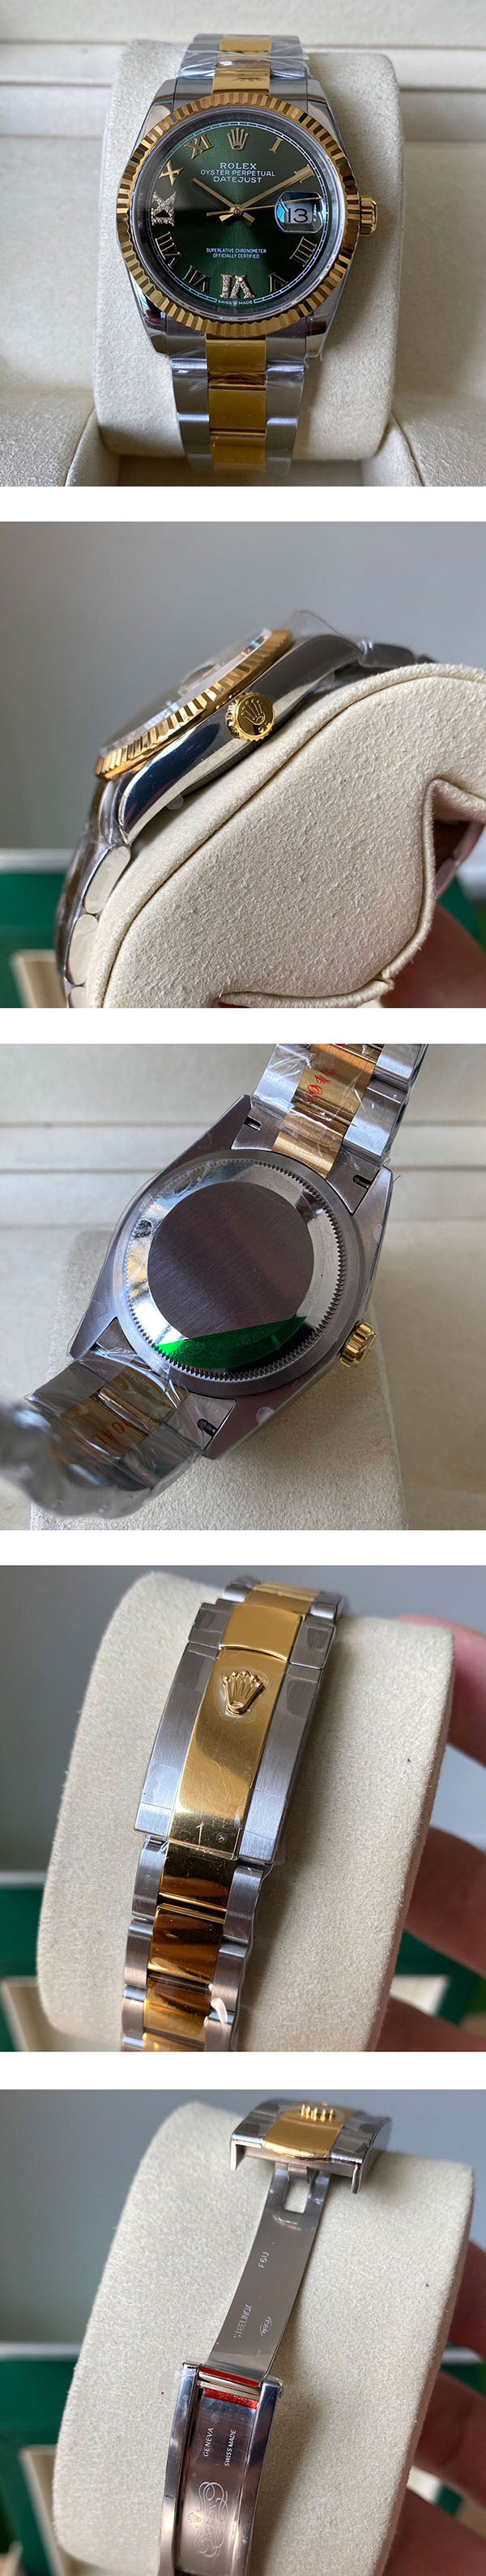  【日本偽物時計】デイトジャストコピー M126233-0026、絶大なる人気を誇る